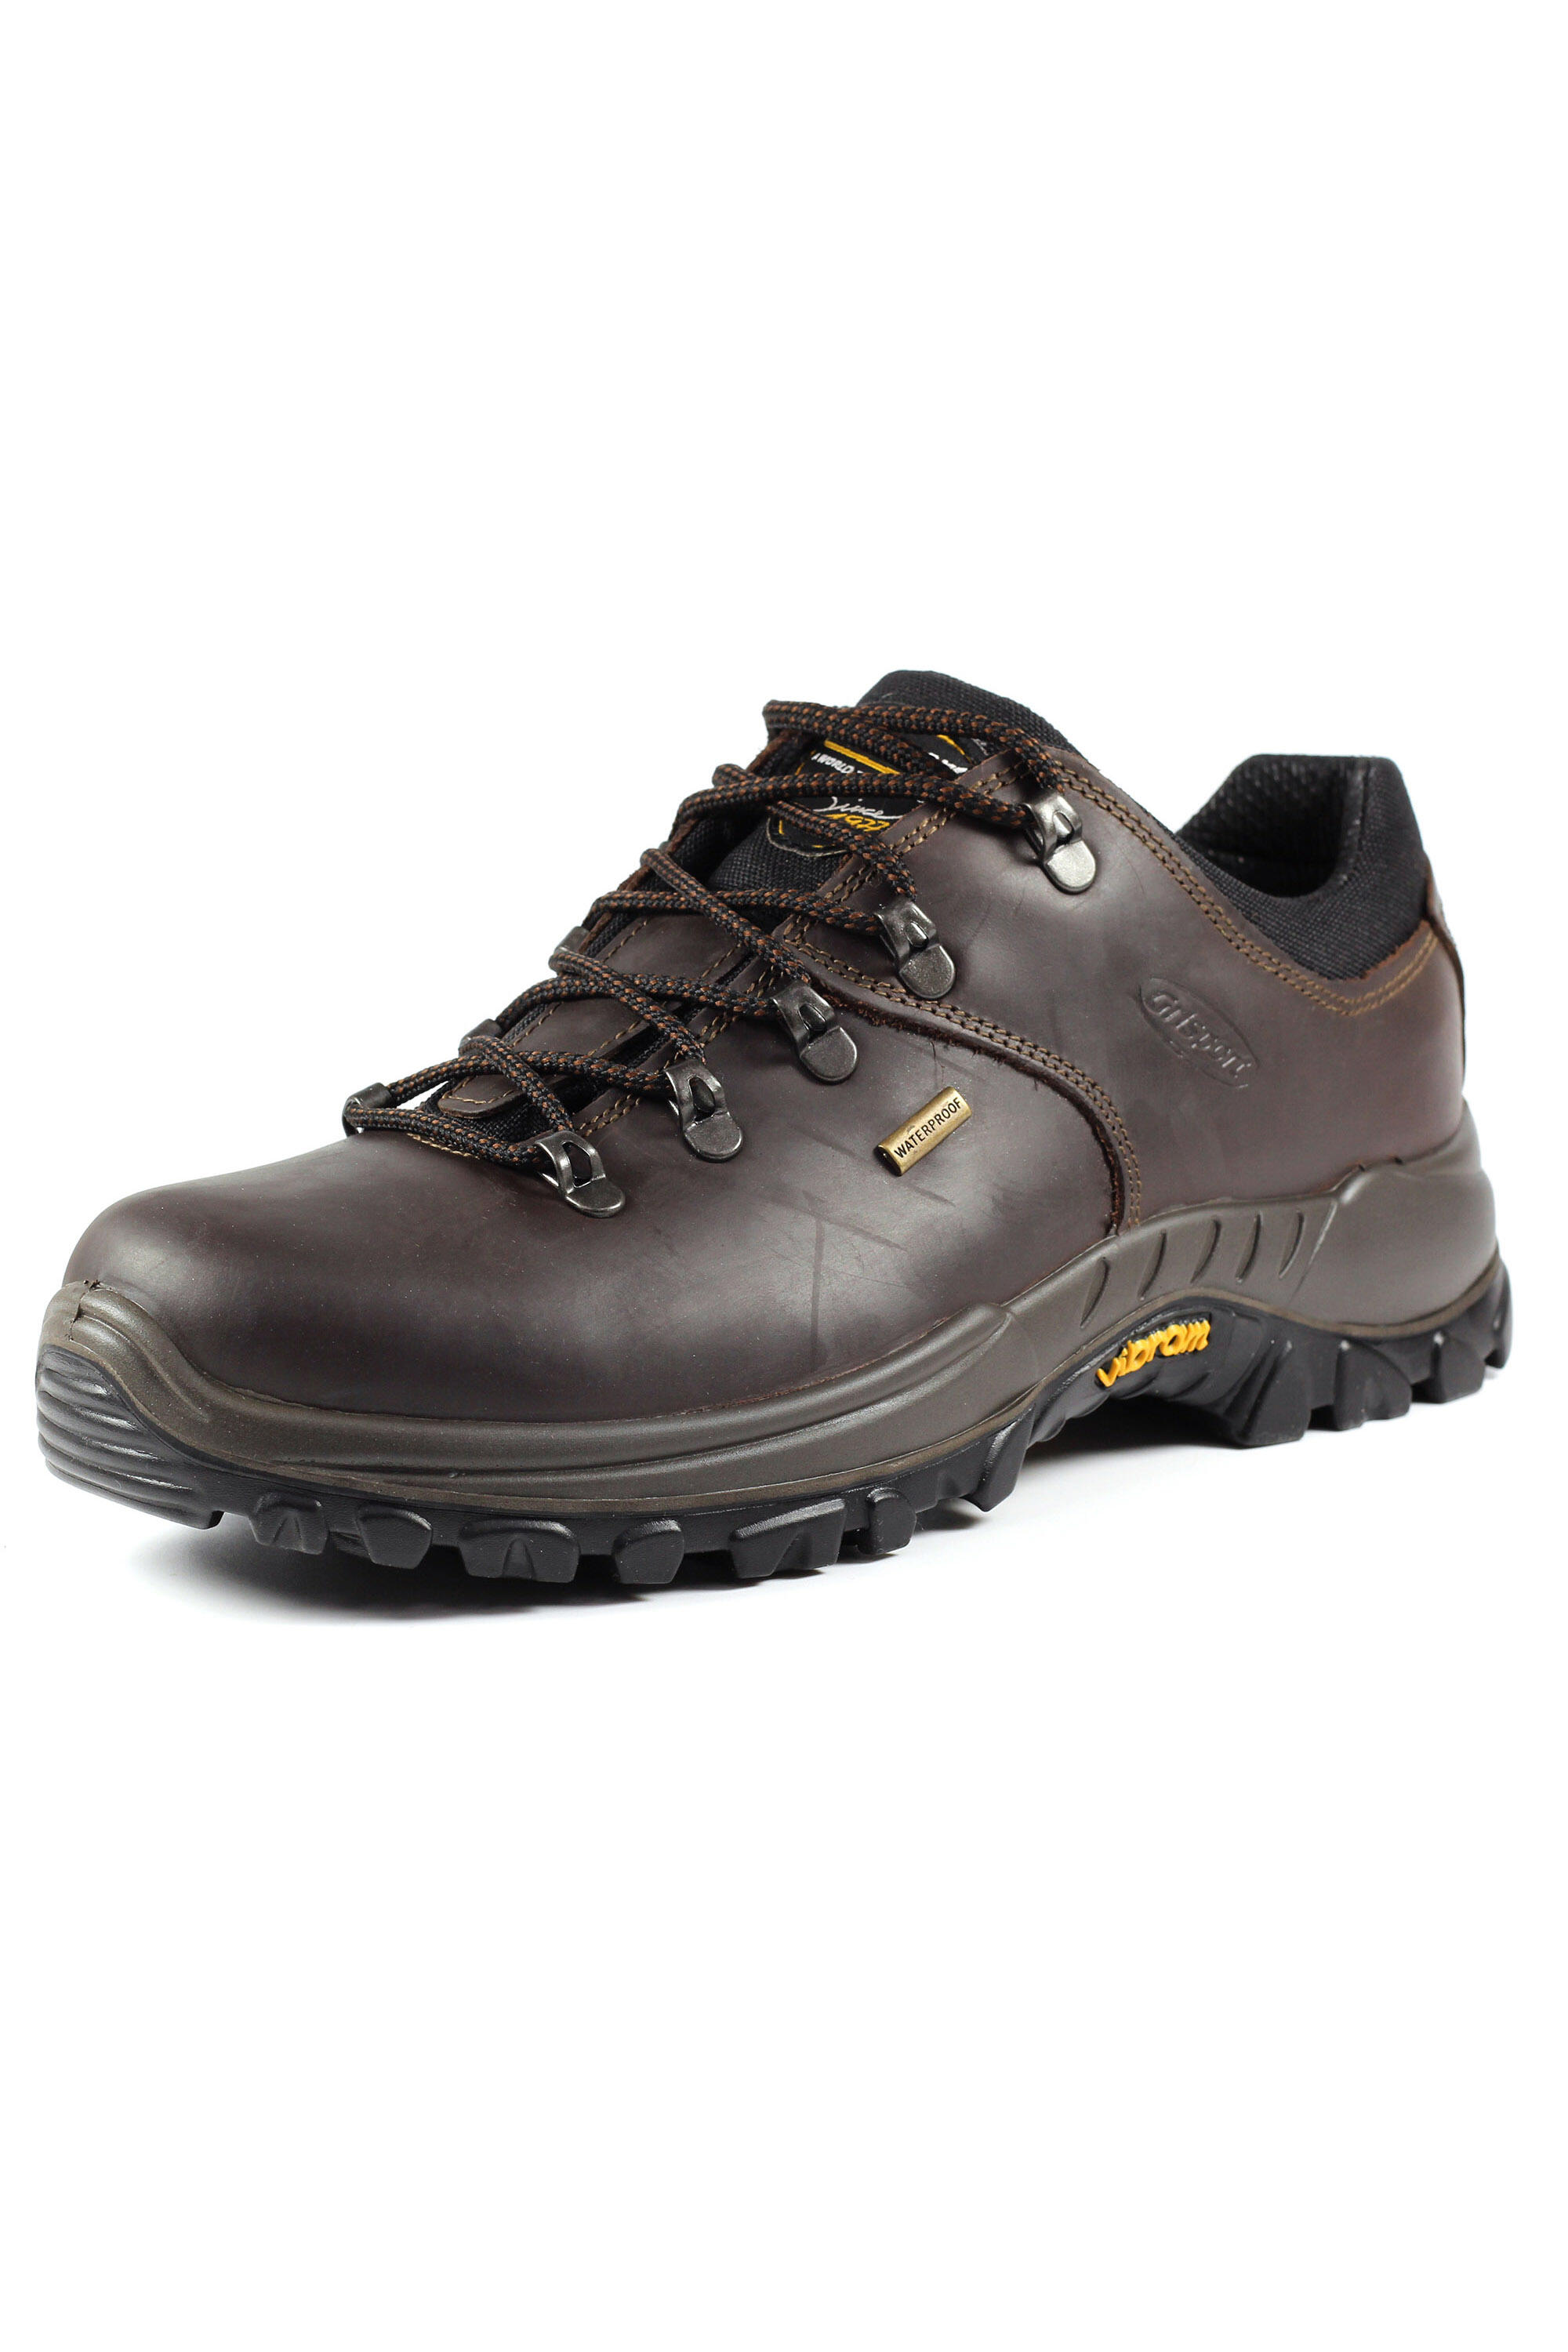 Dartmoor Brown Waterproof Walking Shoes 3/5